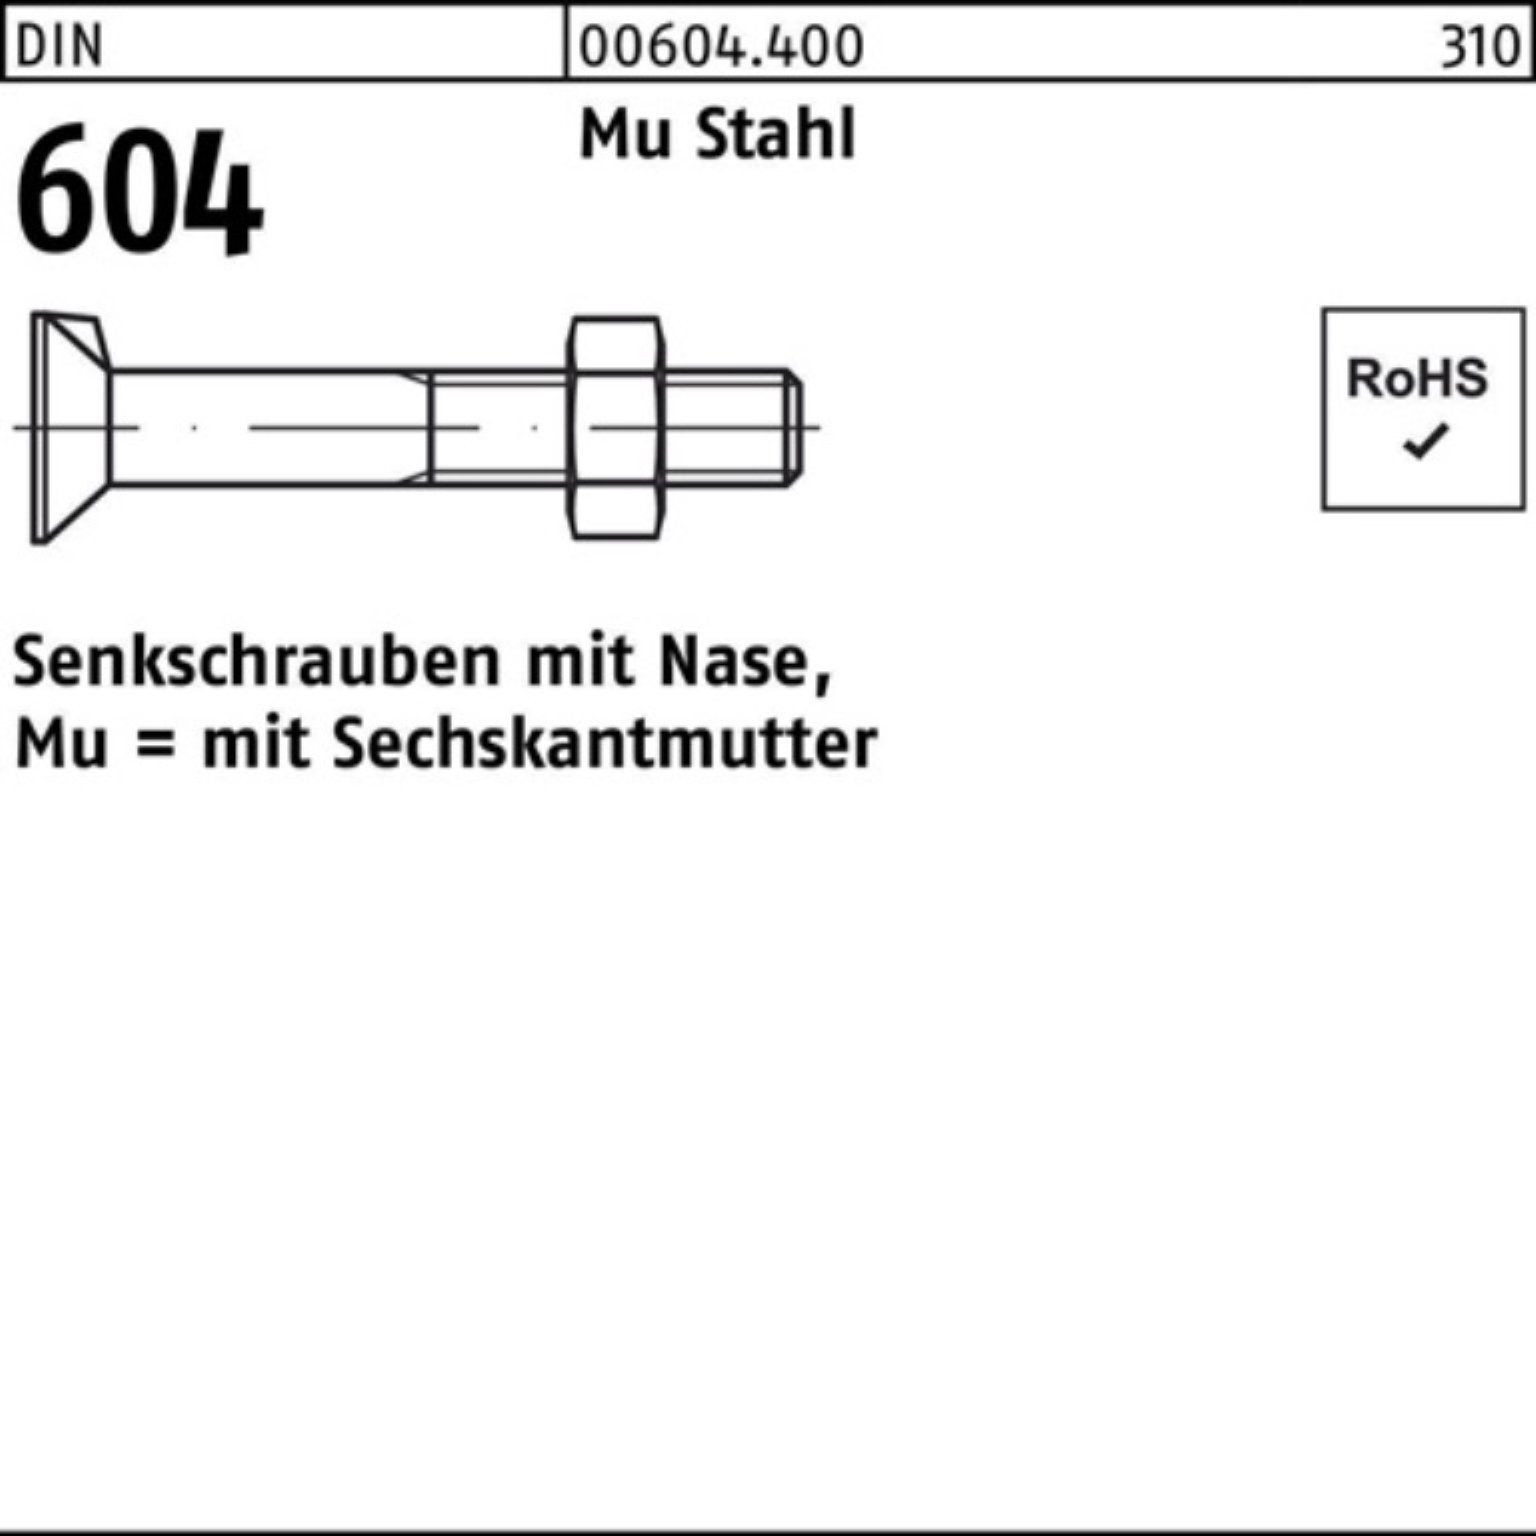 Reyher Senkschraube 100er Pack Senkschraube DIN 604 Nase/6-ktmutter M20x 100 Mu Stahl 4.6